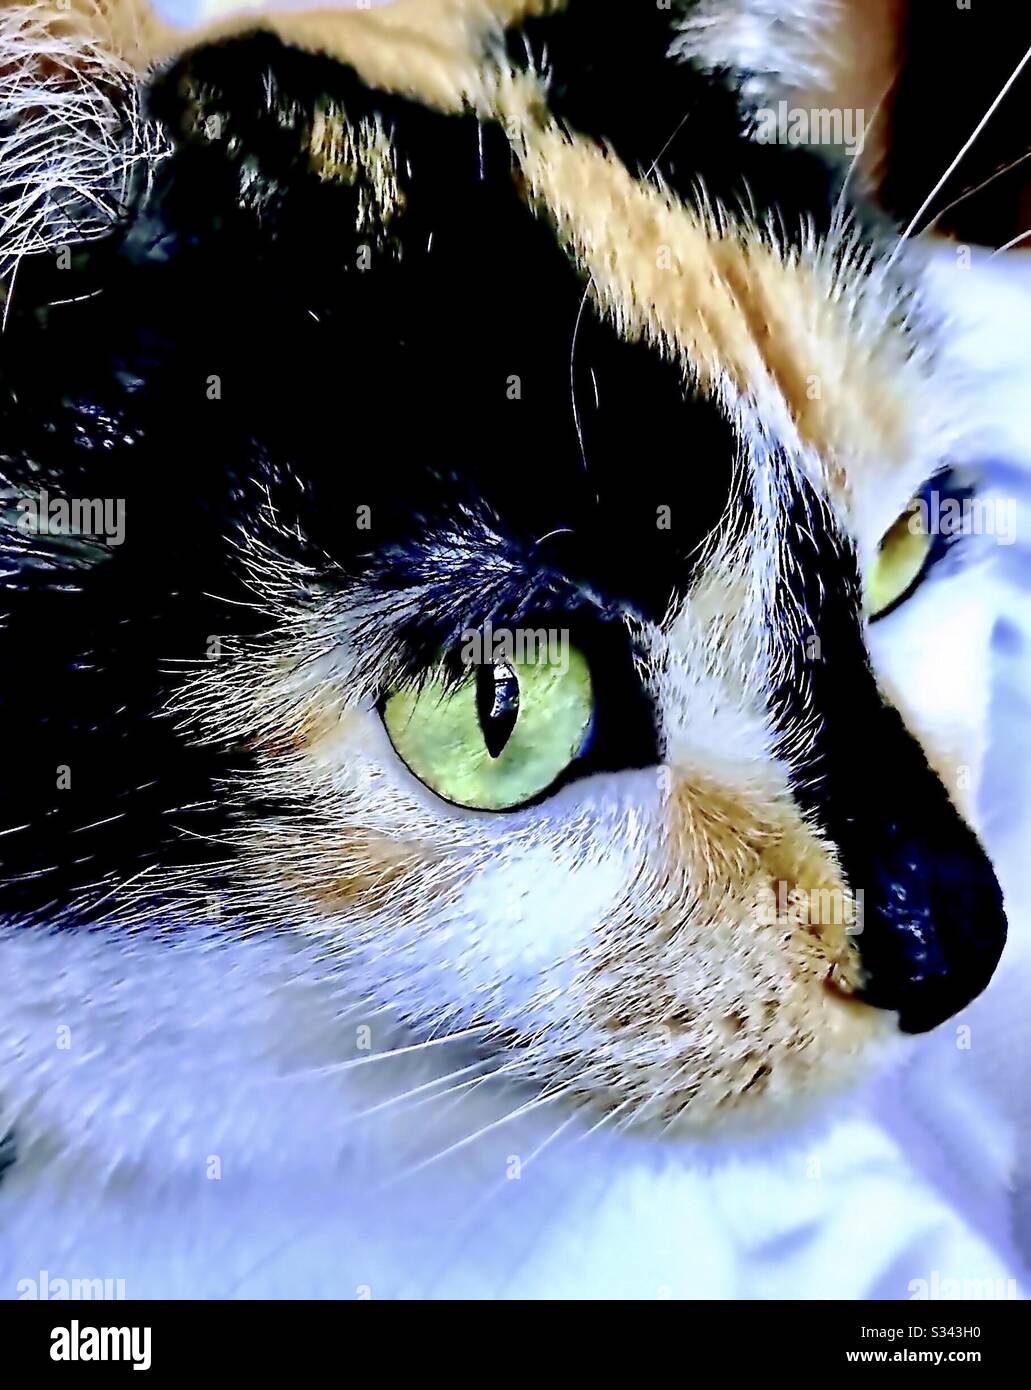 Portrait d'un animal de compagnie d'intérieur magnifique a craché chat calico femelle avec de magnifiques yeux verts, chaton de shorthair domestique ou américain Banque D'Images